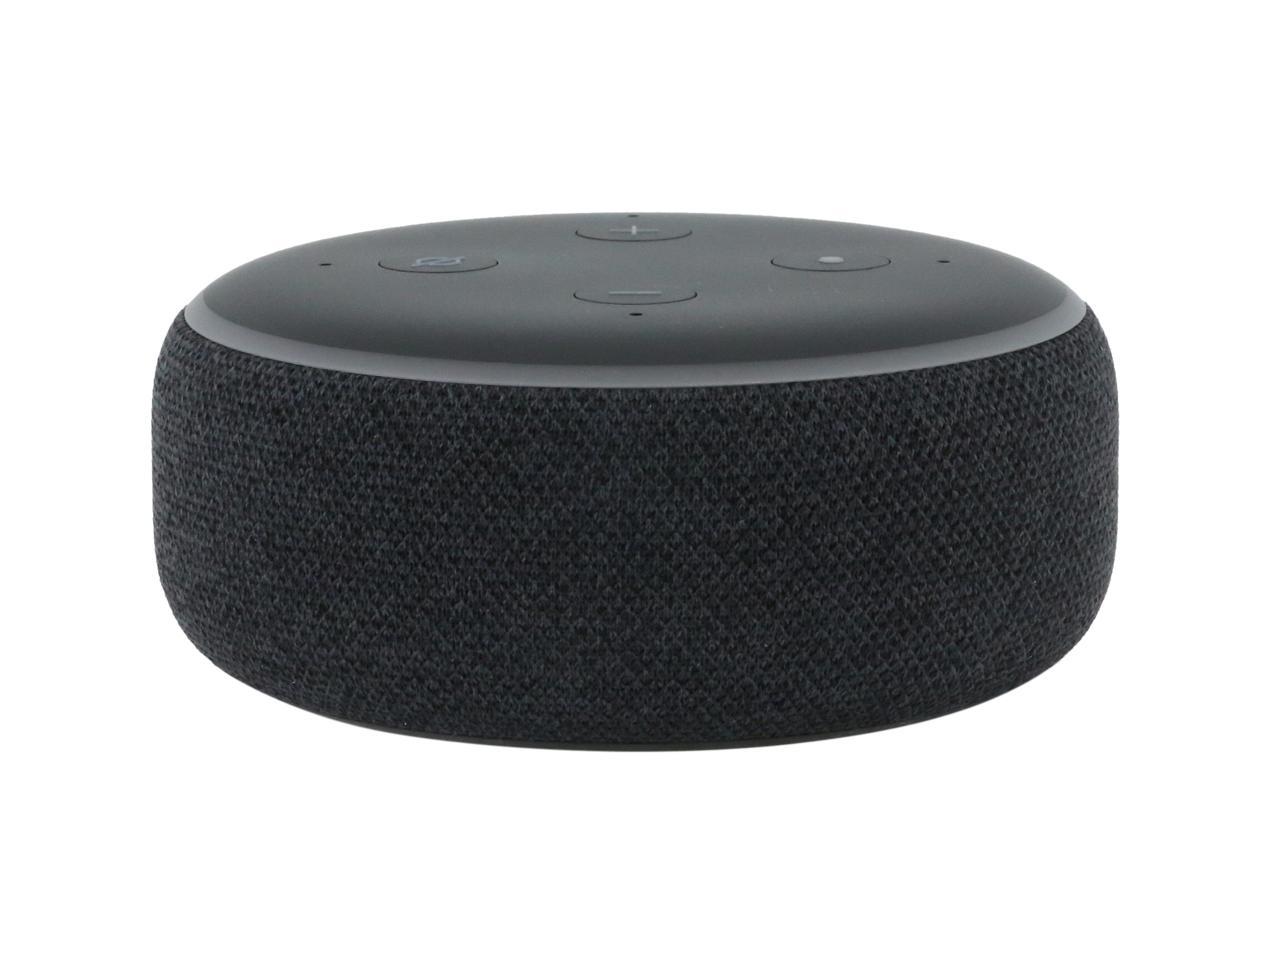 Amazon Echo Dot 3rd Generation Alexa Voice Media Device Charcoal NEW SEALED BOX 